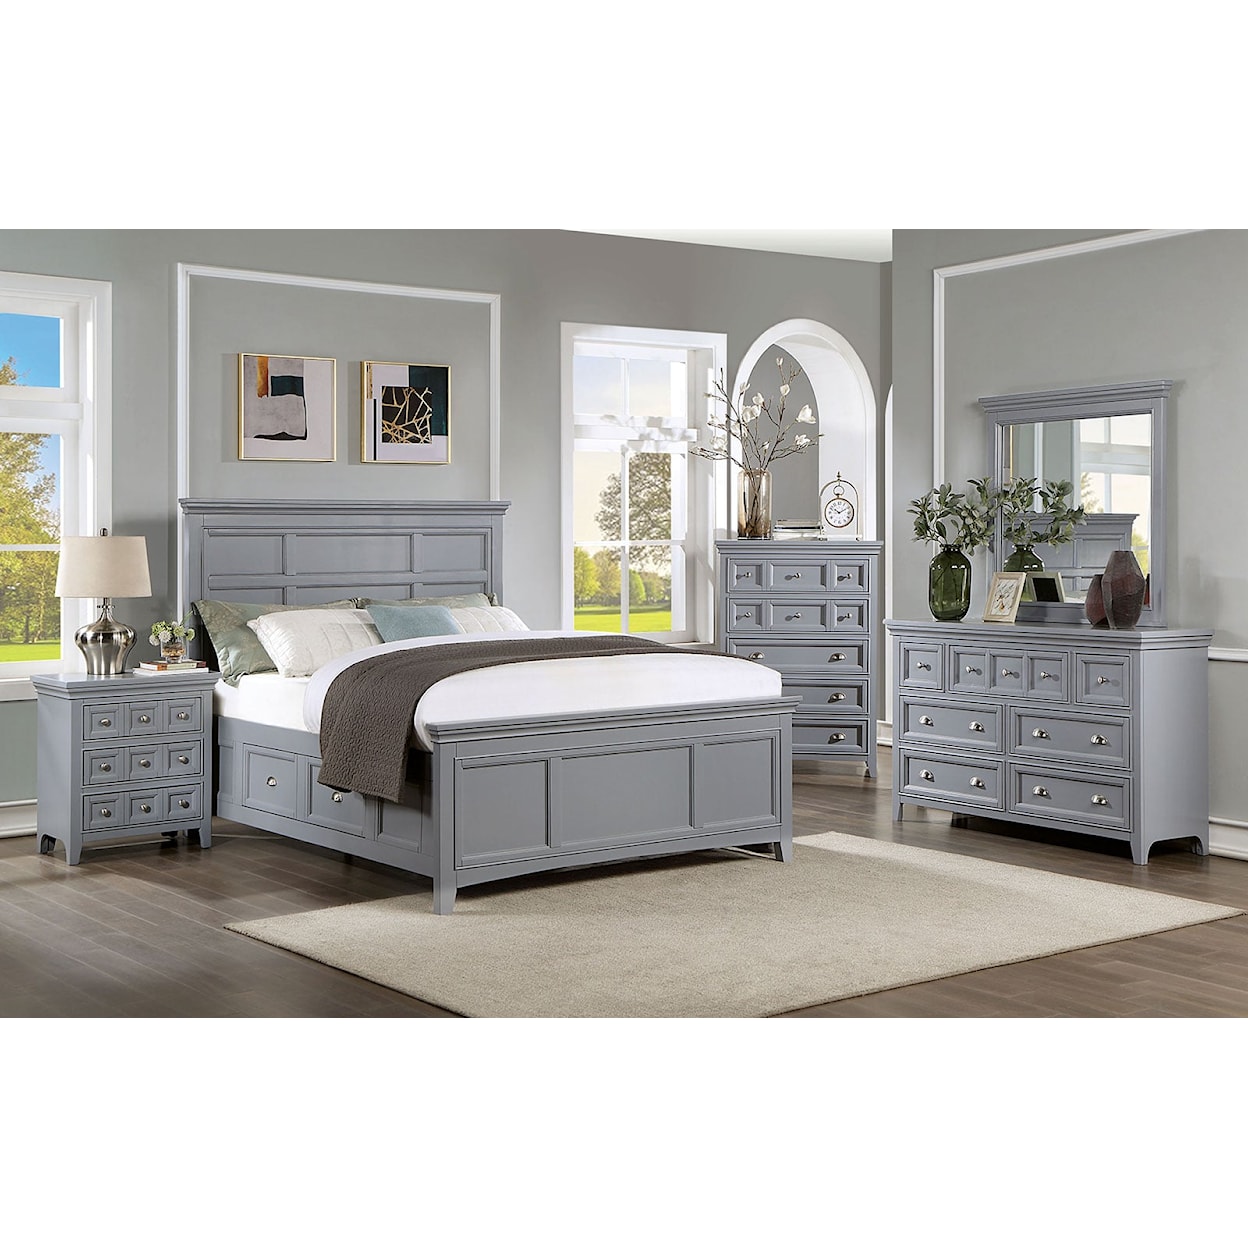 Furniture of America Castlile 4-Piece Queen Bedroom Set